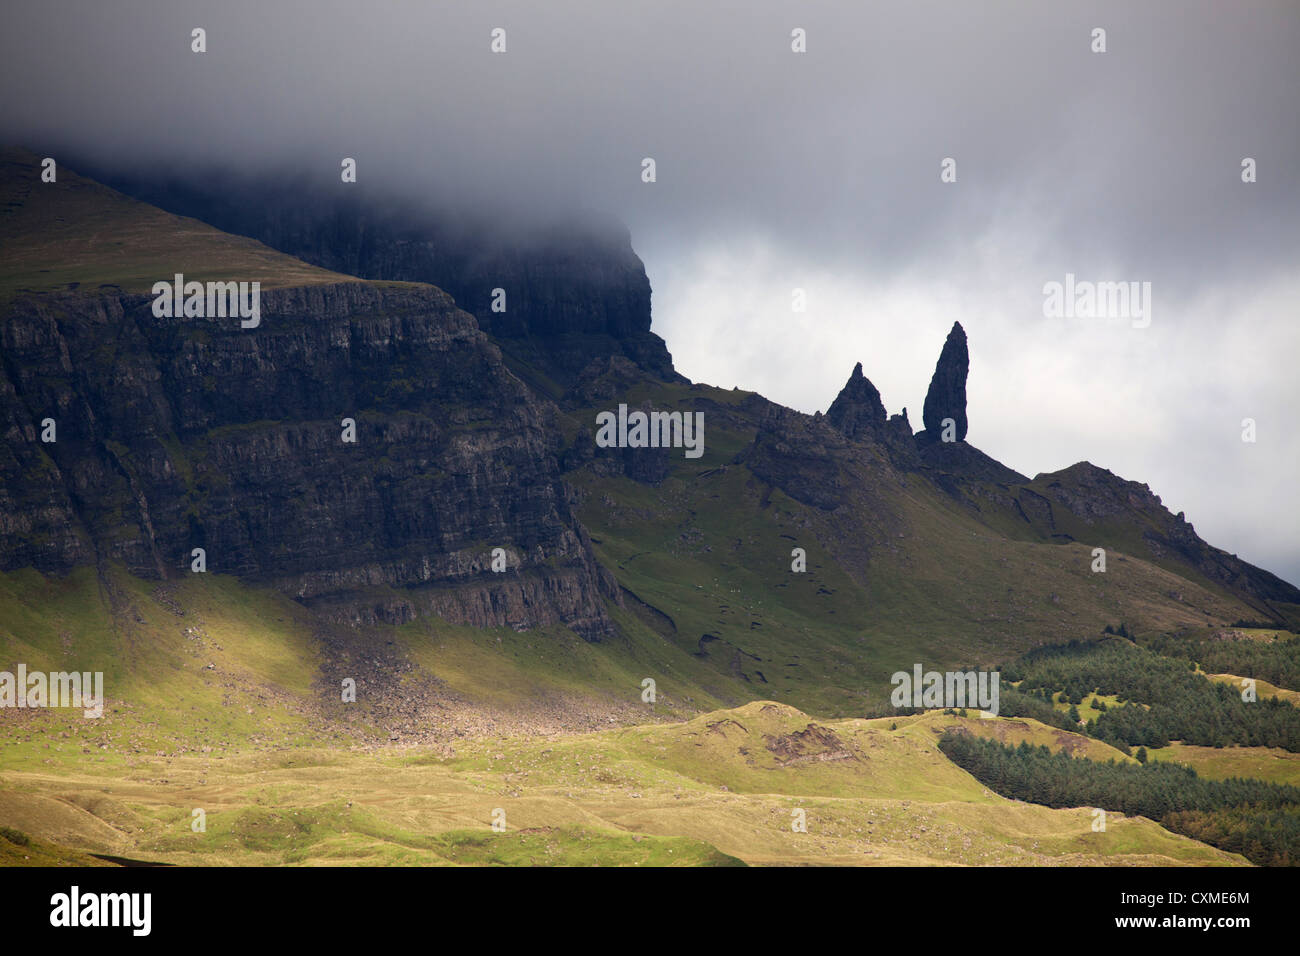 La isla de Skye, Escocia. Vista espectacular de la colina Storr y el hombre viejo de Storr en el noreste de la costa de Skye. Foto de stock